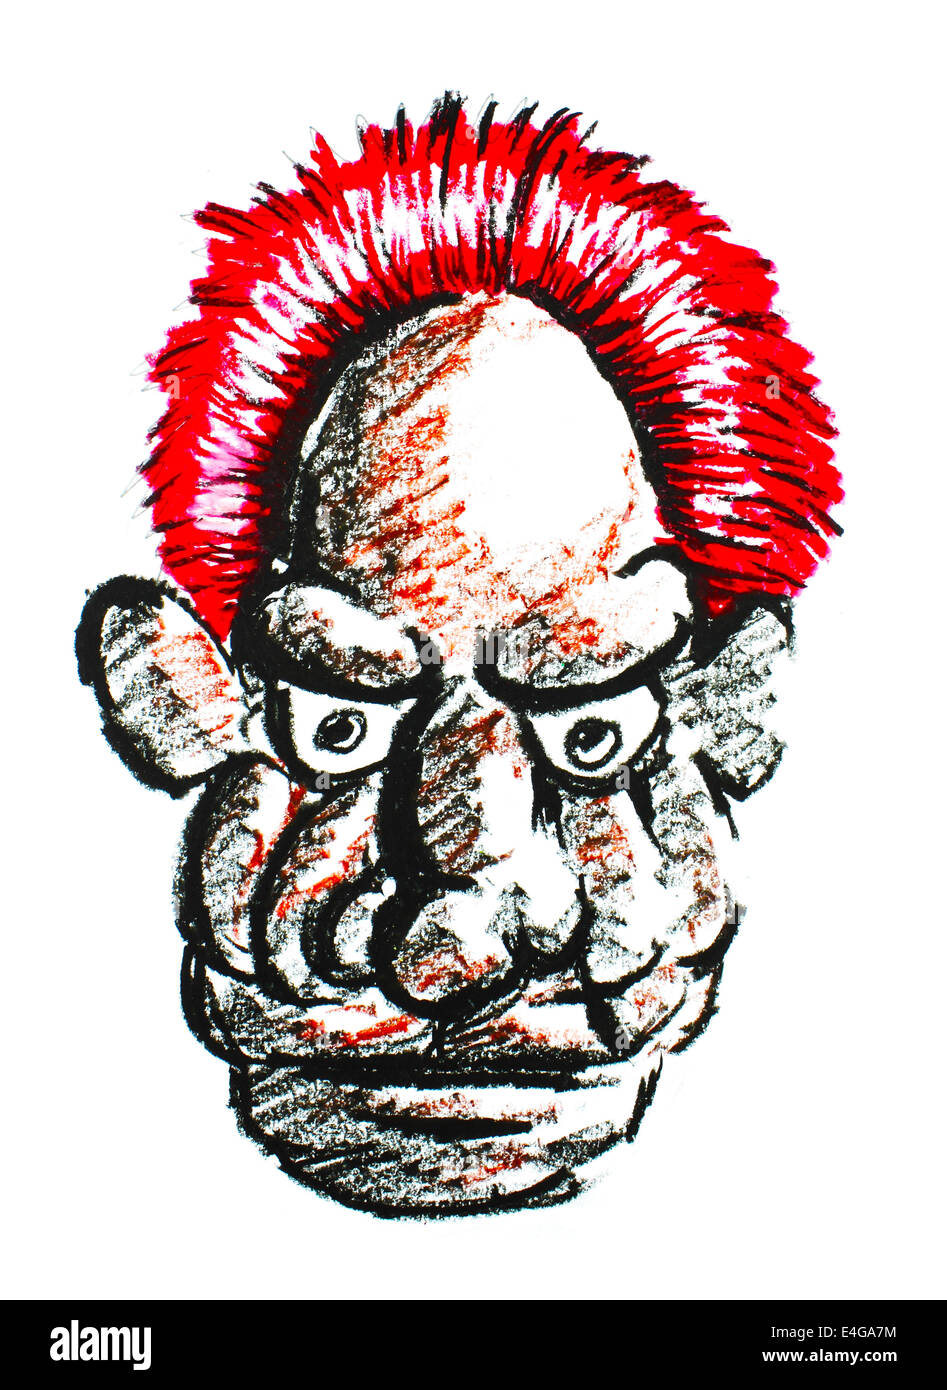 Alter Mann Gesicht mit roten Haaren Stockfoto